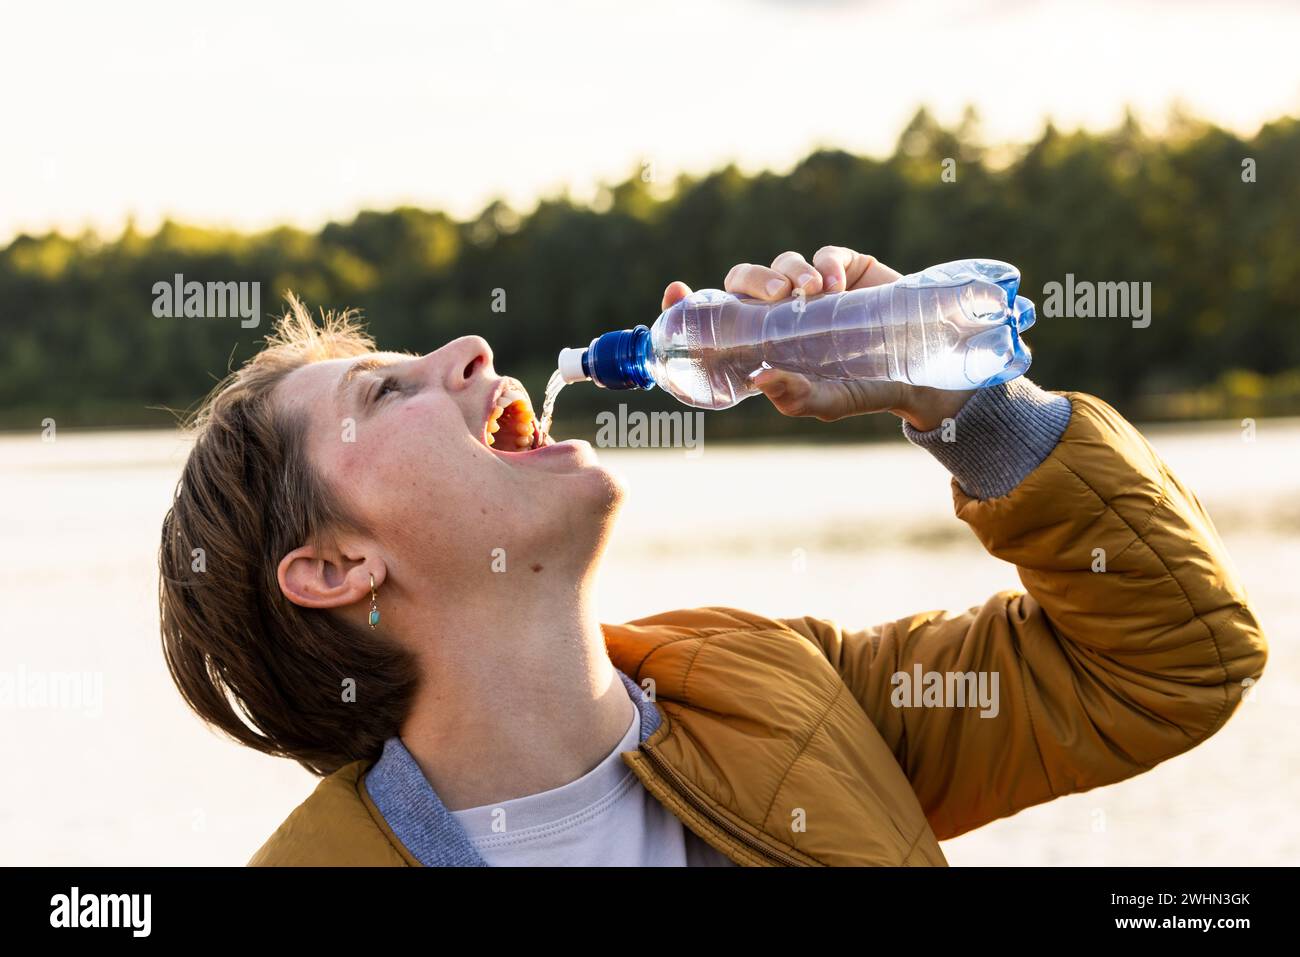 La giovane ragazza caucasica beve acqua rinfrescante da una bottiglia all'aperto. La bruna a occhi aperti indossa una camicia bianca e marrone Foto Stock